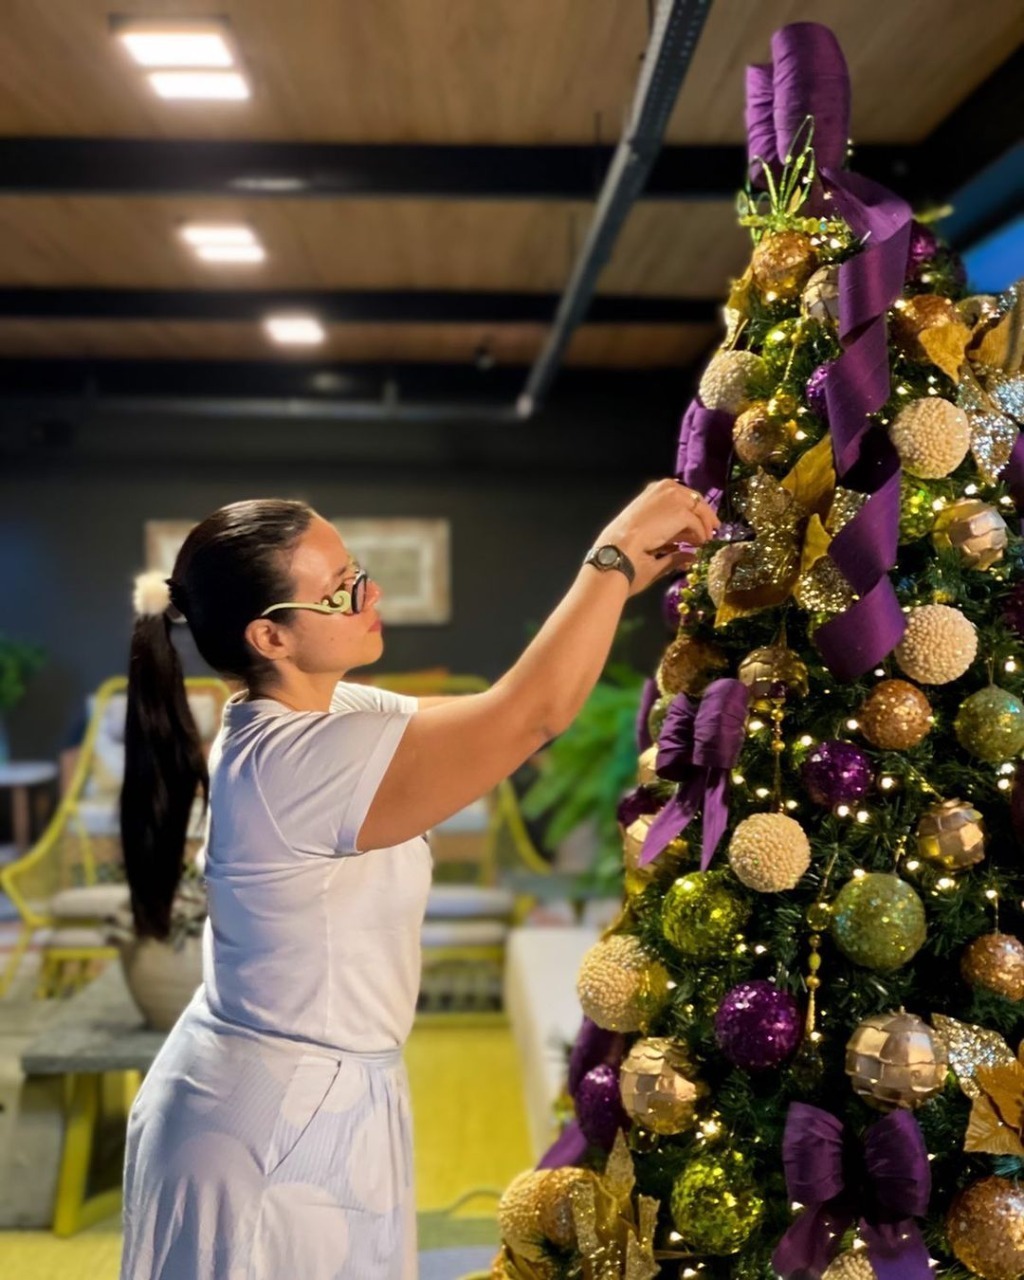 Laços de Seda: artista plástica, Soraya Pedrosa lança exposição com novidades em decoração natalina no Recife